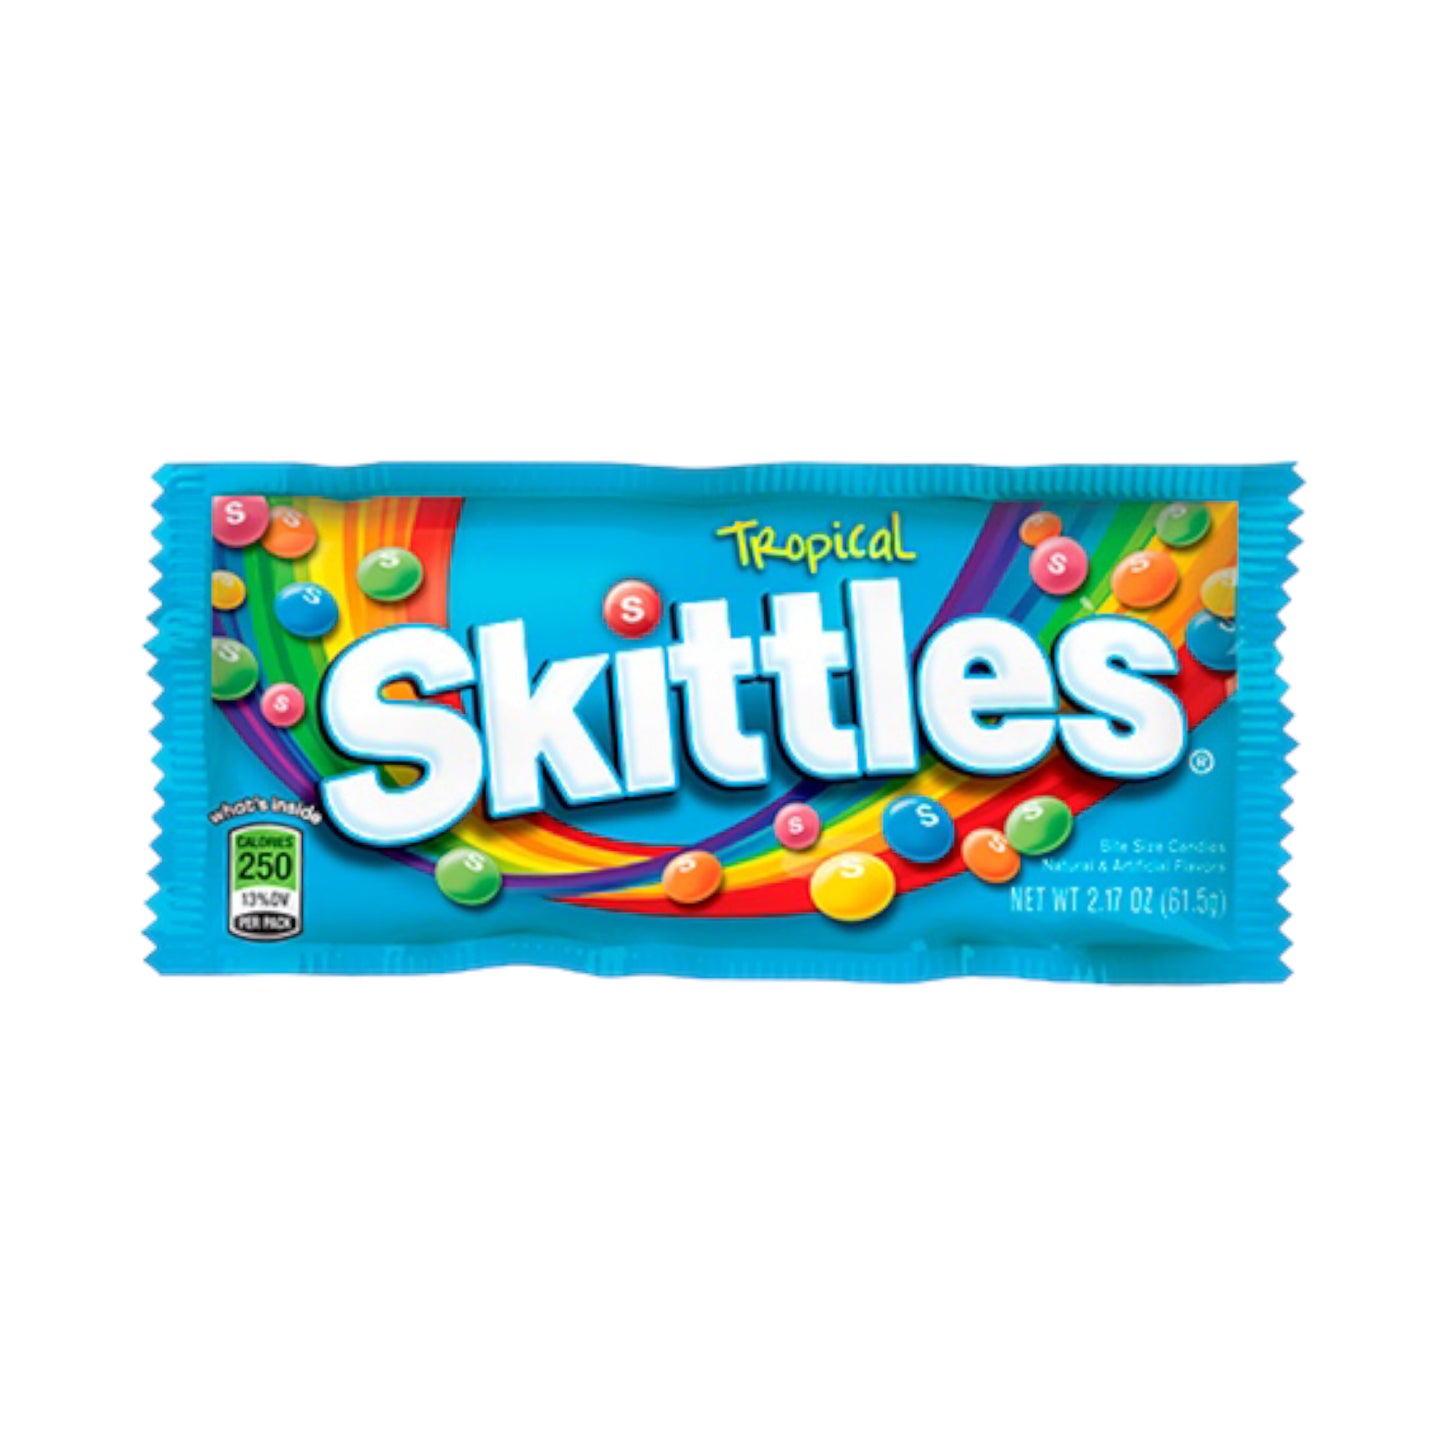 Skittles Tropical 2.17oz (61.5g) - (USA)